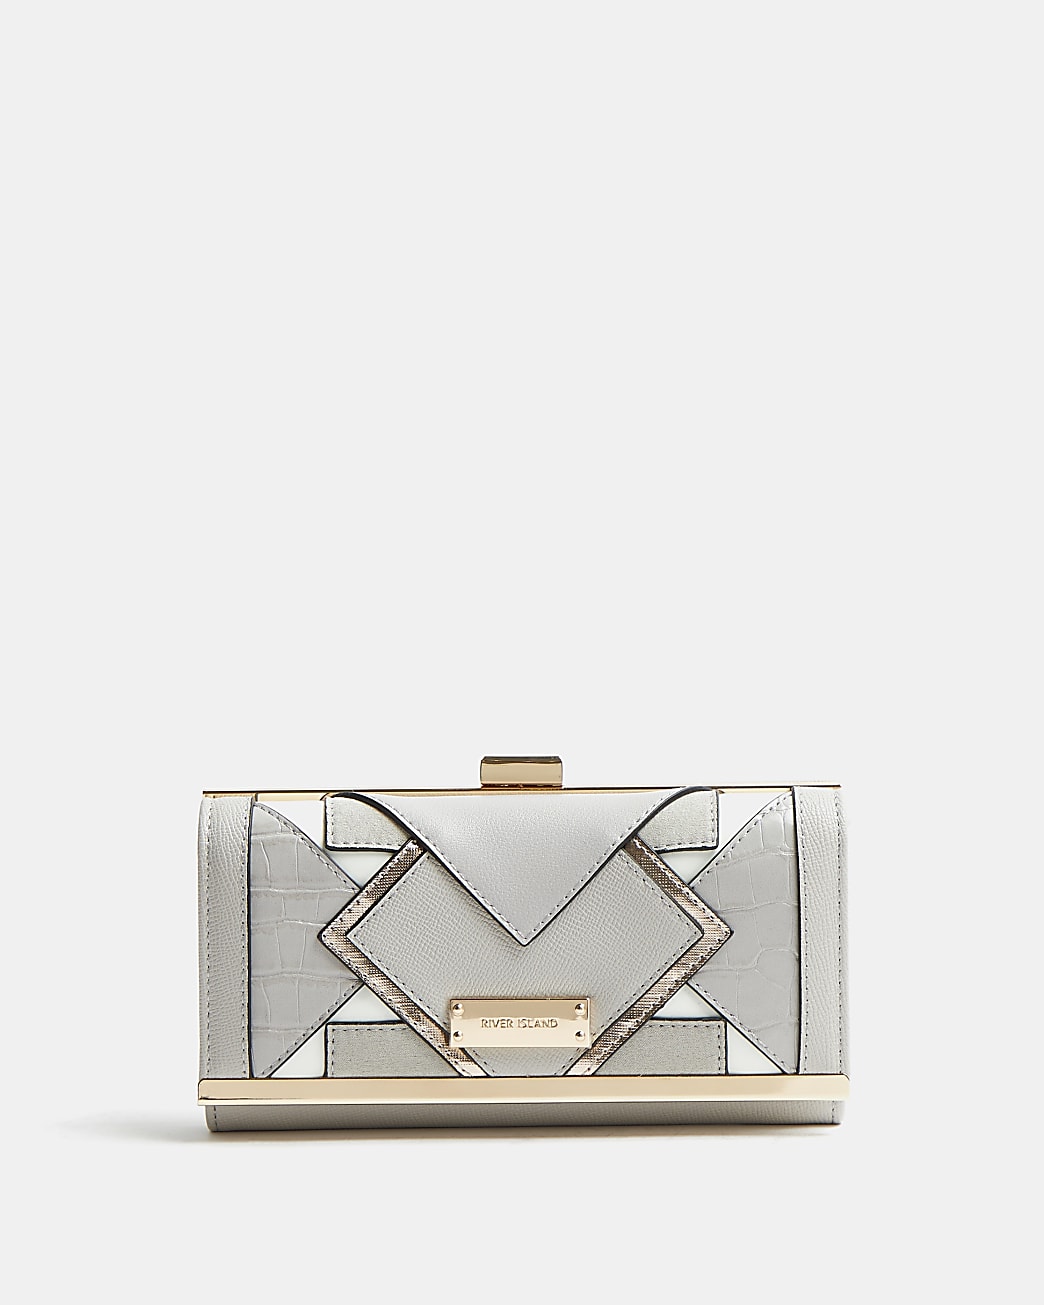 Grey cut out purse